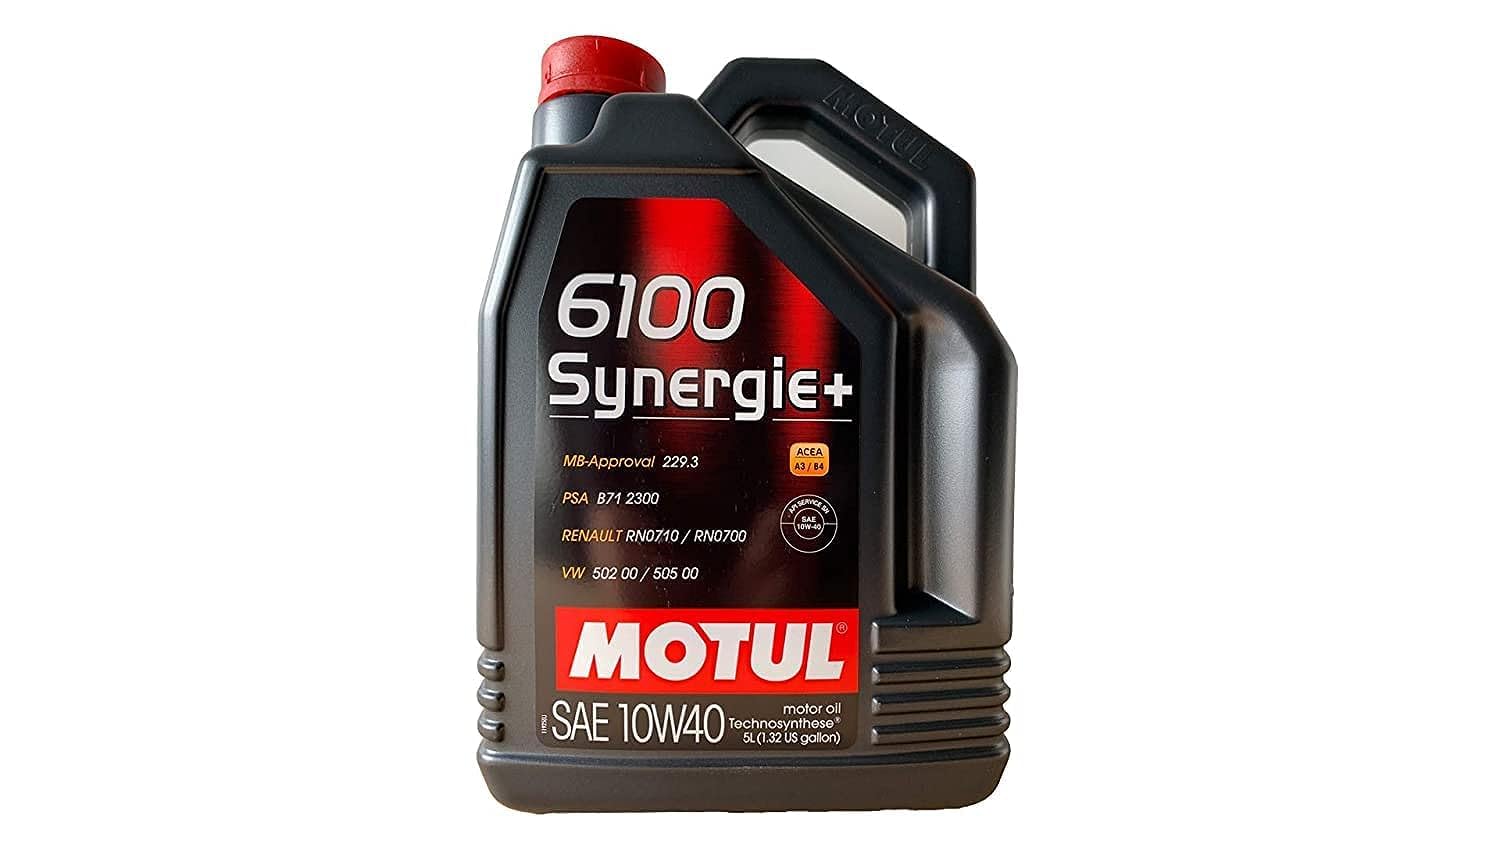 Motul Motoröl 6100 Synergie+ 10W40 Motor Oil 108647 5L